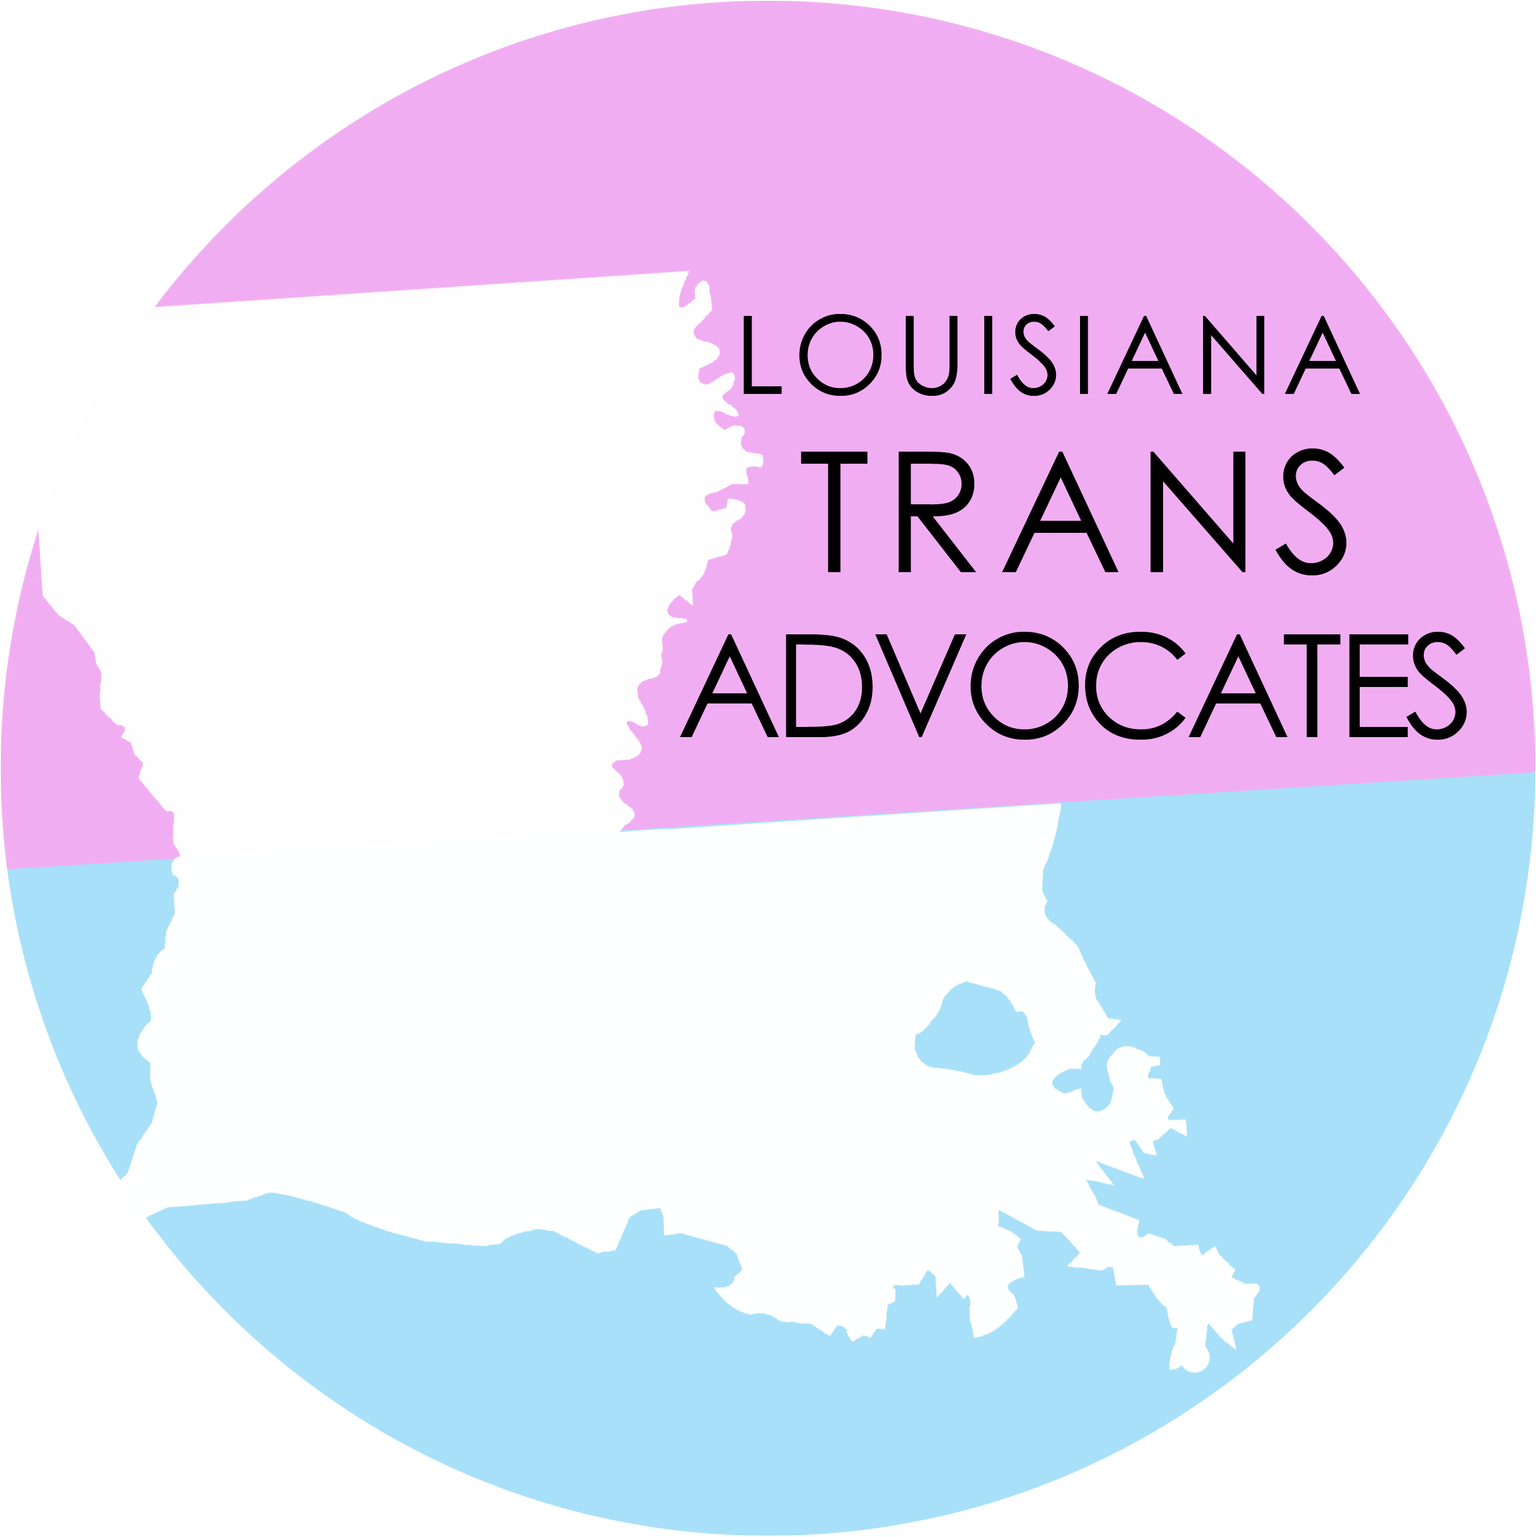 Louisiana Trans Advocates